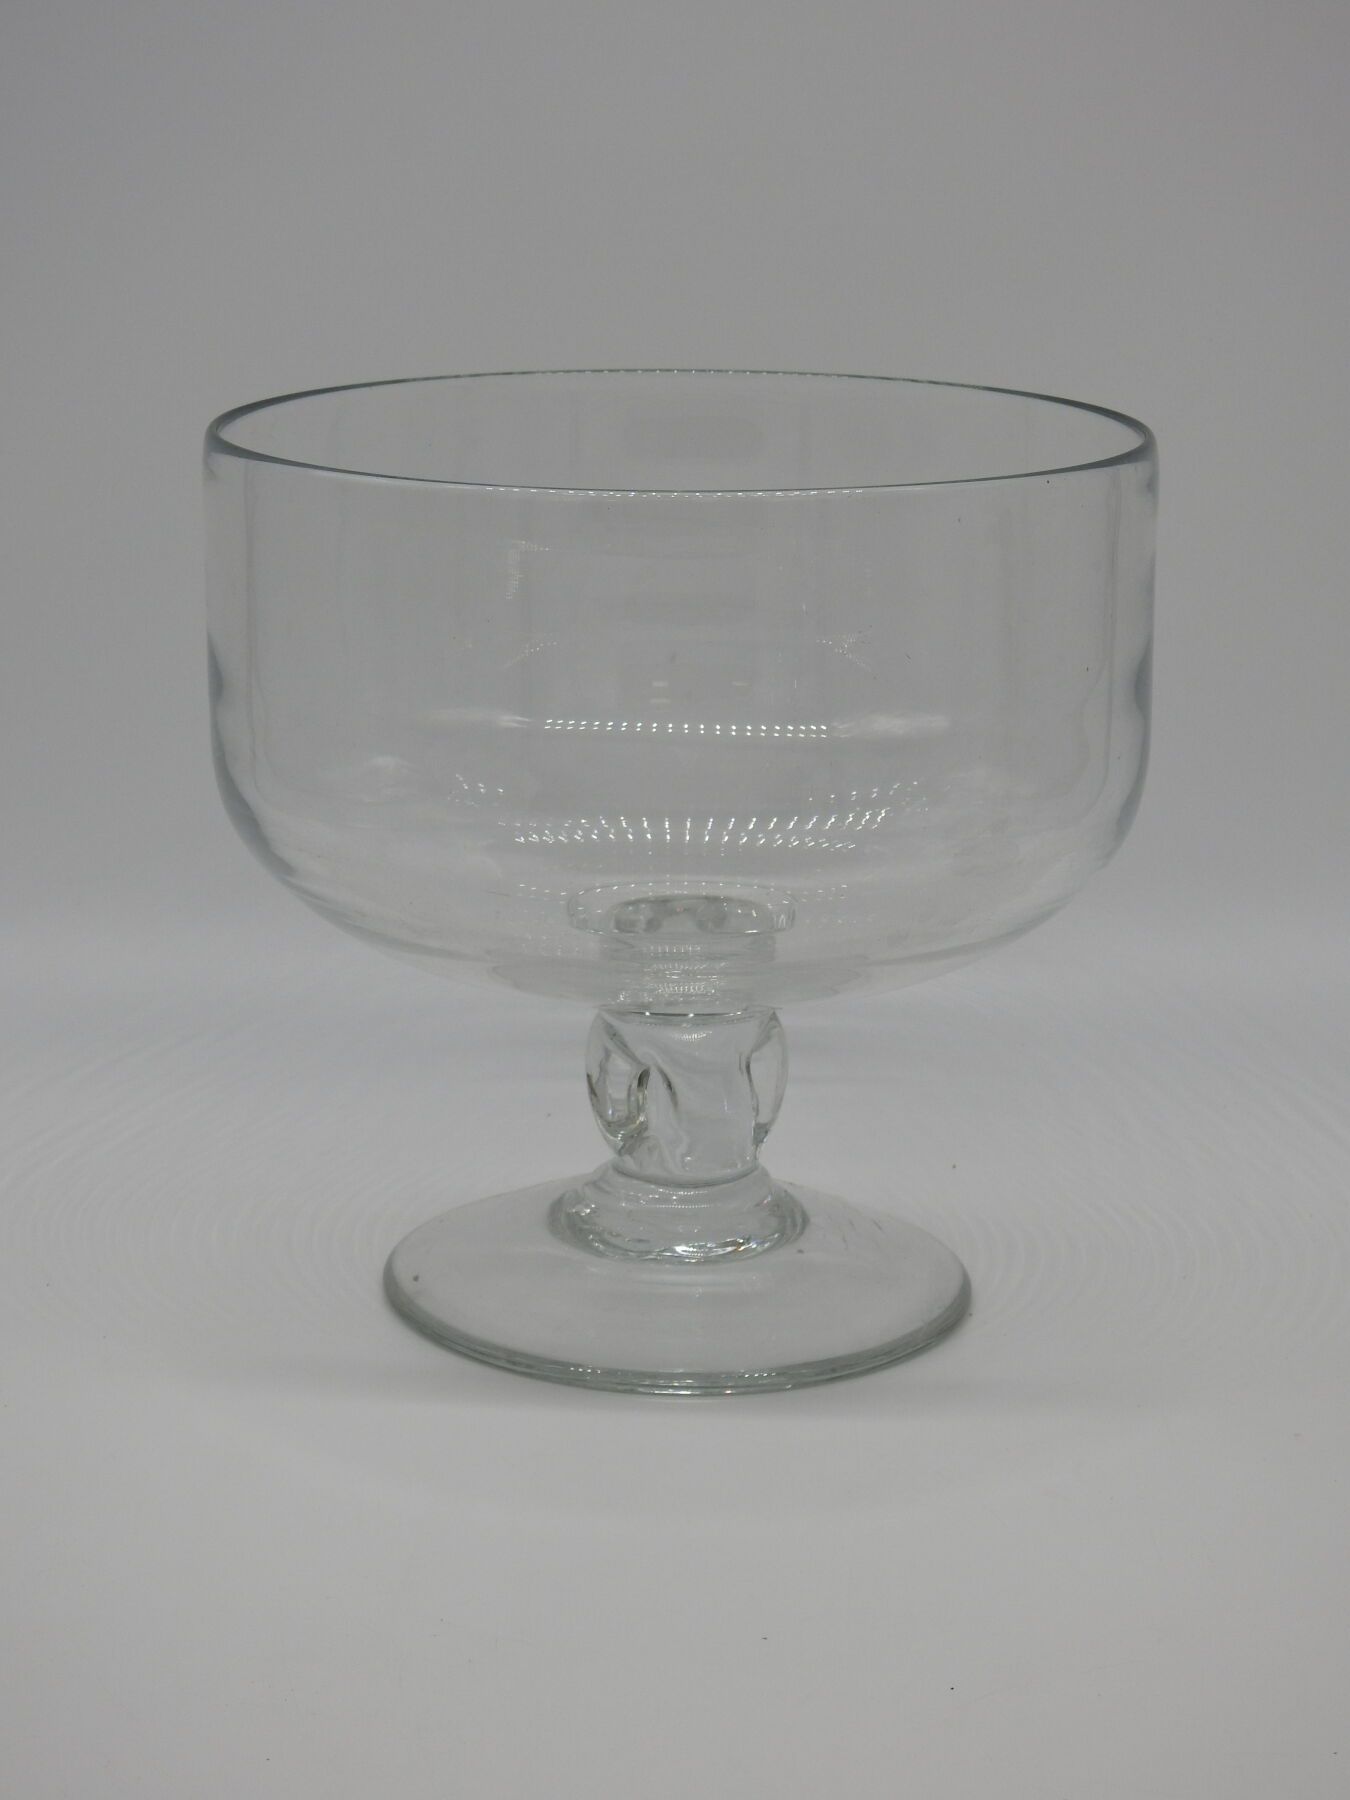 Null 重要的是圆形吹制玻璃杯的脚。19世纪。高26.5厘米，长27厘米。一些磨损和撕裂。